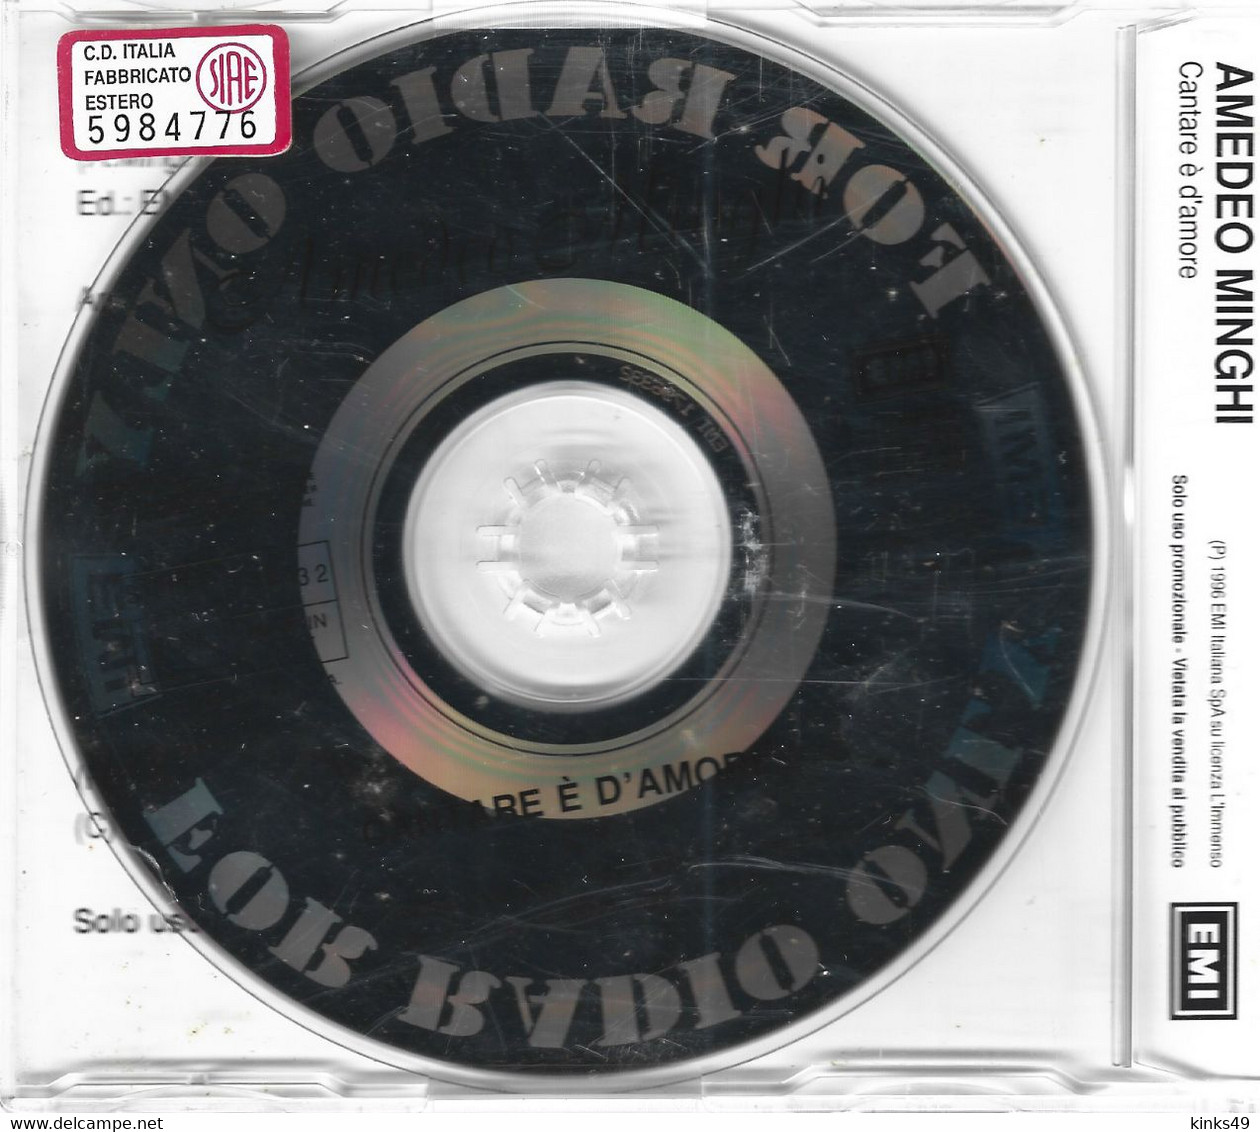 AMEDEO MINGHI : CD Singolo Promozionale < Cantare è D'amore > 1996 / EMI - Other - Italian Music